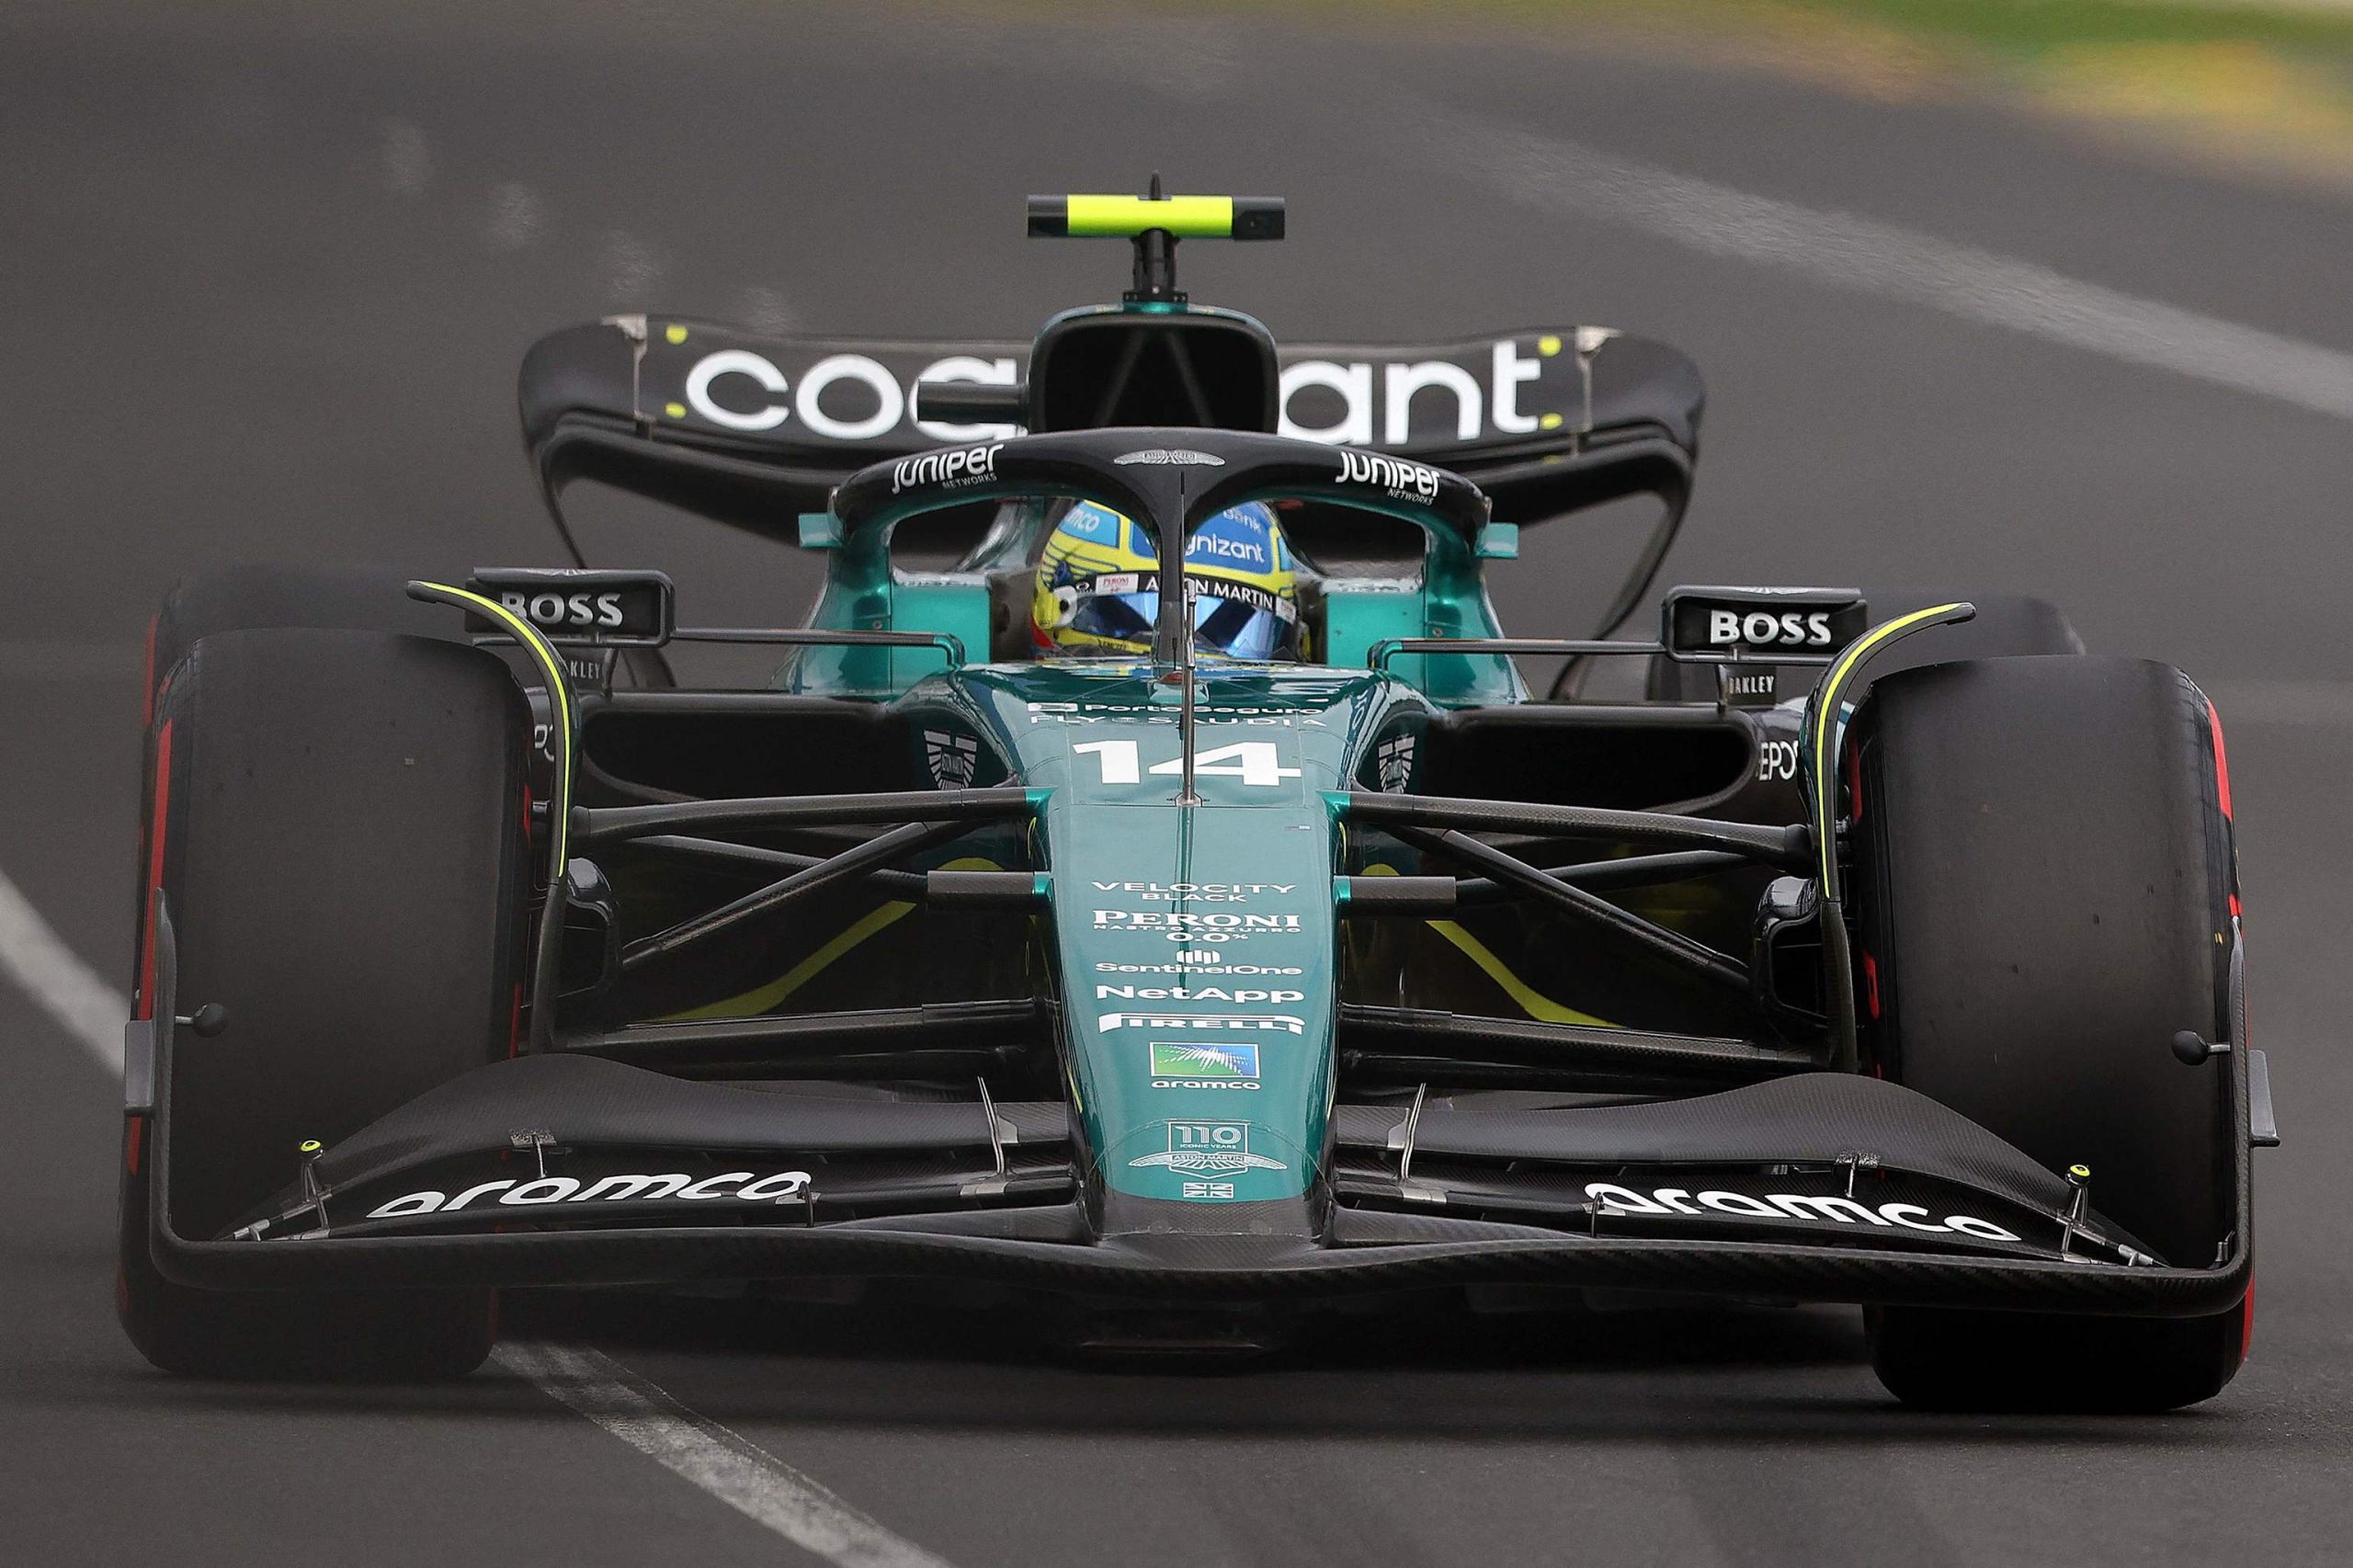 Los Mercedes resucitan y amenazan el podio de Alonso en Australia: "Si hay una masacre aprovecharé"